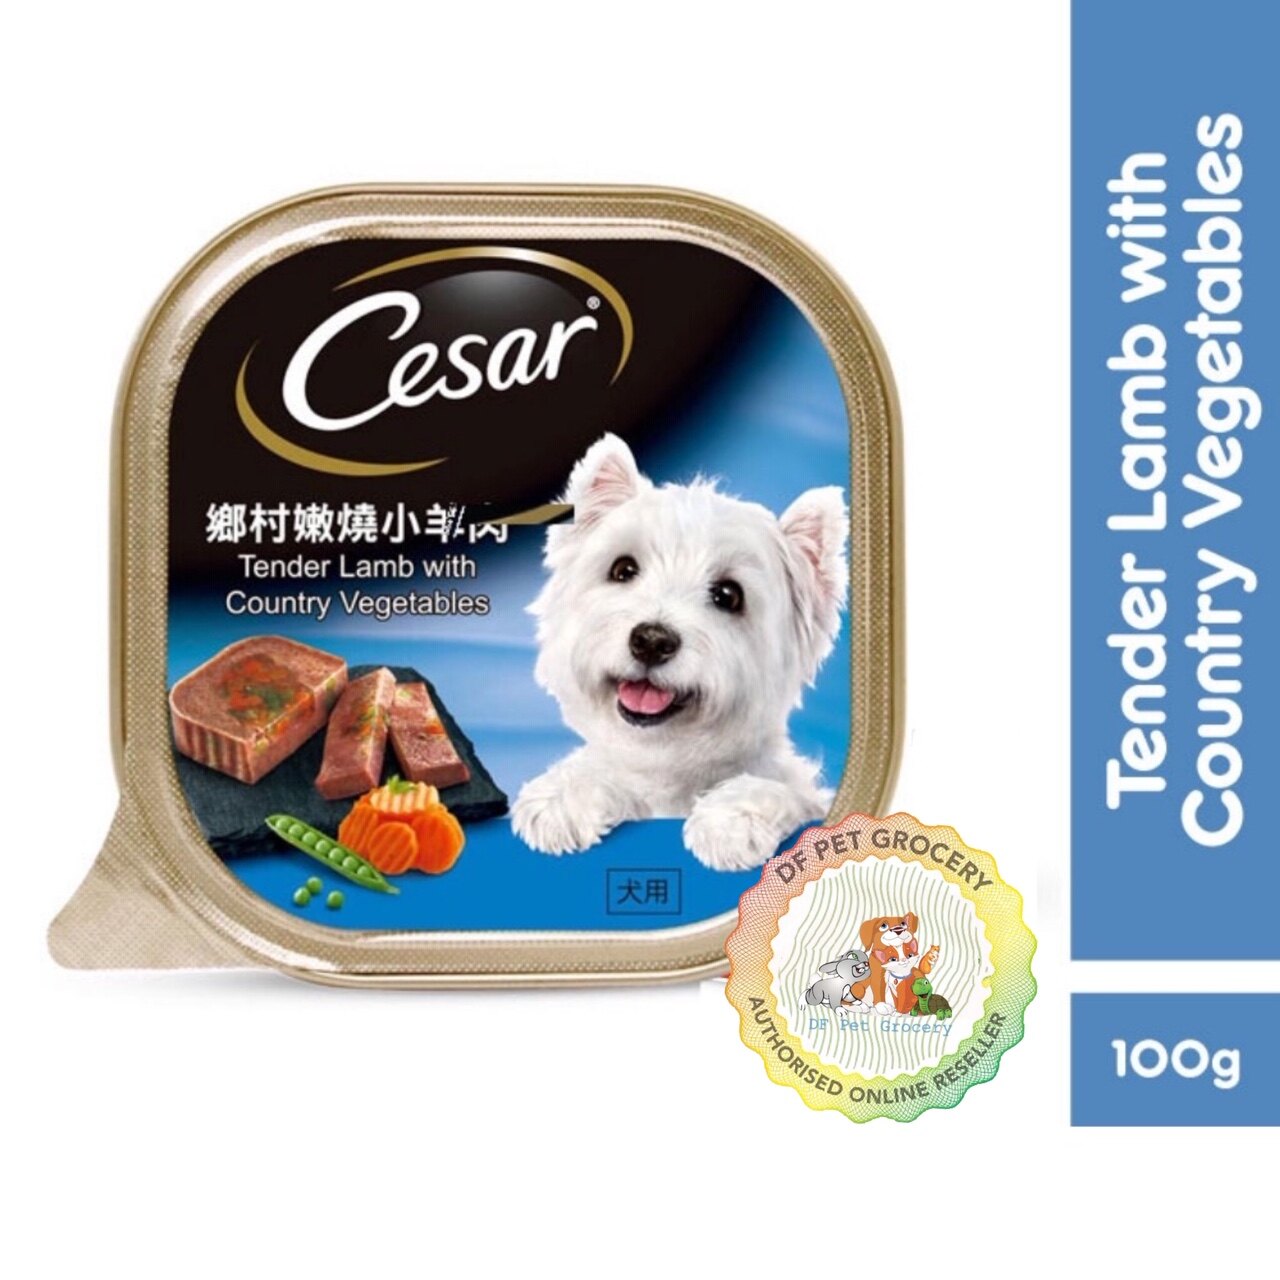 CESAR DOG FOOD 100G X 24 Tray - CESAR TRAY